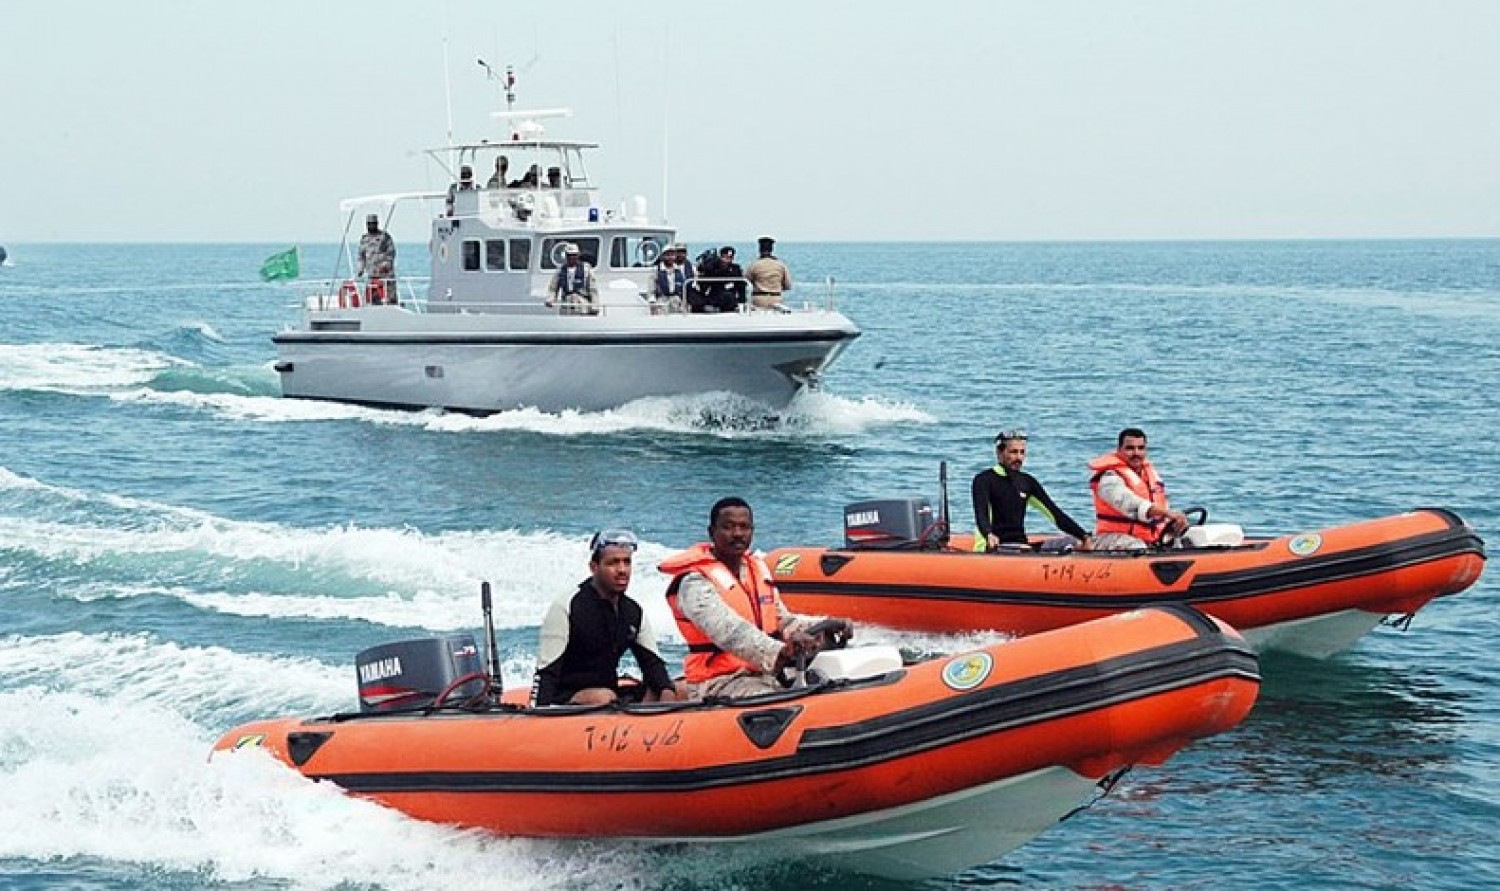 القنصلية العامة بجدة تتابع تتطورات حادث غرق قارب صيد على متنه ستة صيادين مصريين